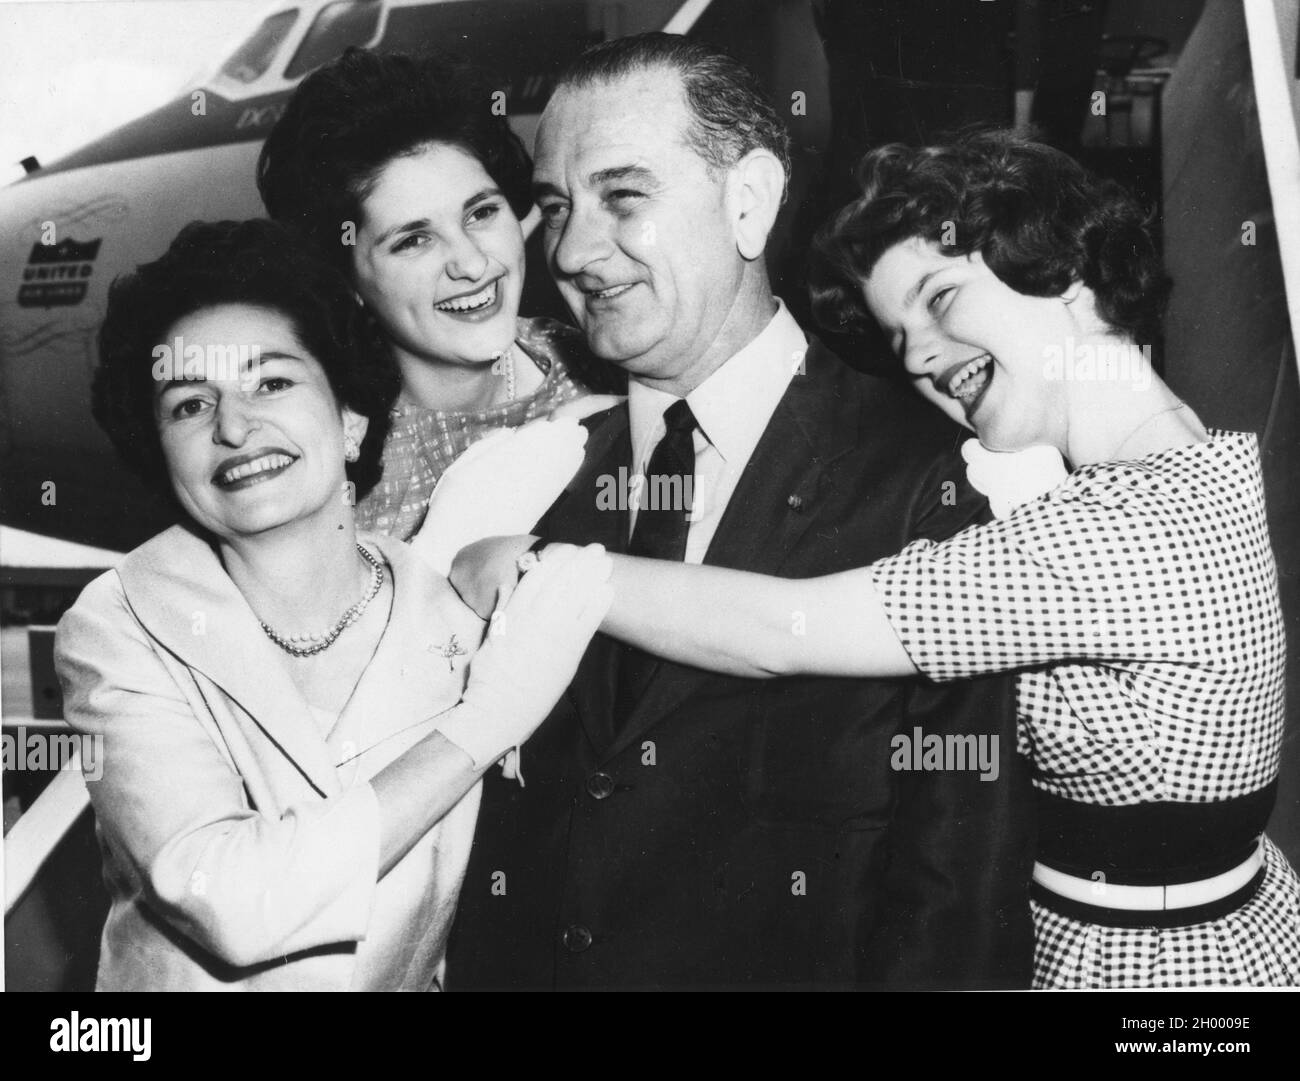 Le sénateur Lyndon B. Johnson est adopté par sa femme, Lady Bird (à gauche) et leurs filles, Lynda (à gauche) et Lucy (à droite).Les Johnsons étaient en route pour la Convention démocratique de Los Angeles.7-7-60. Banque D'Images